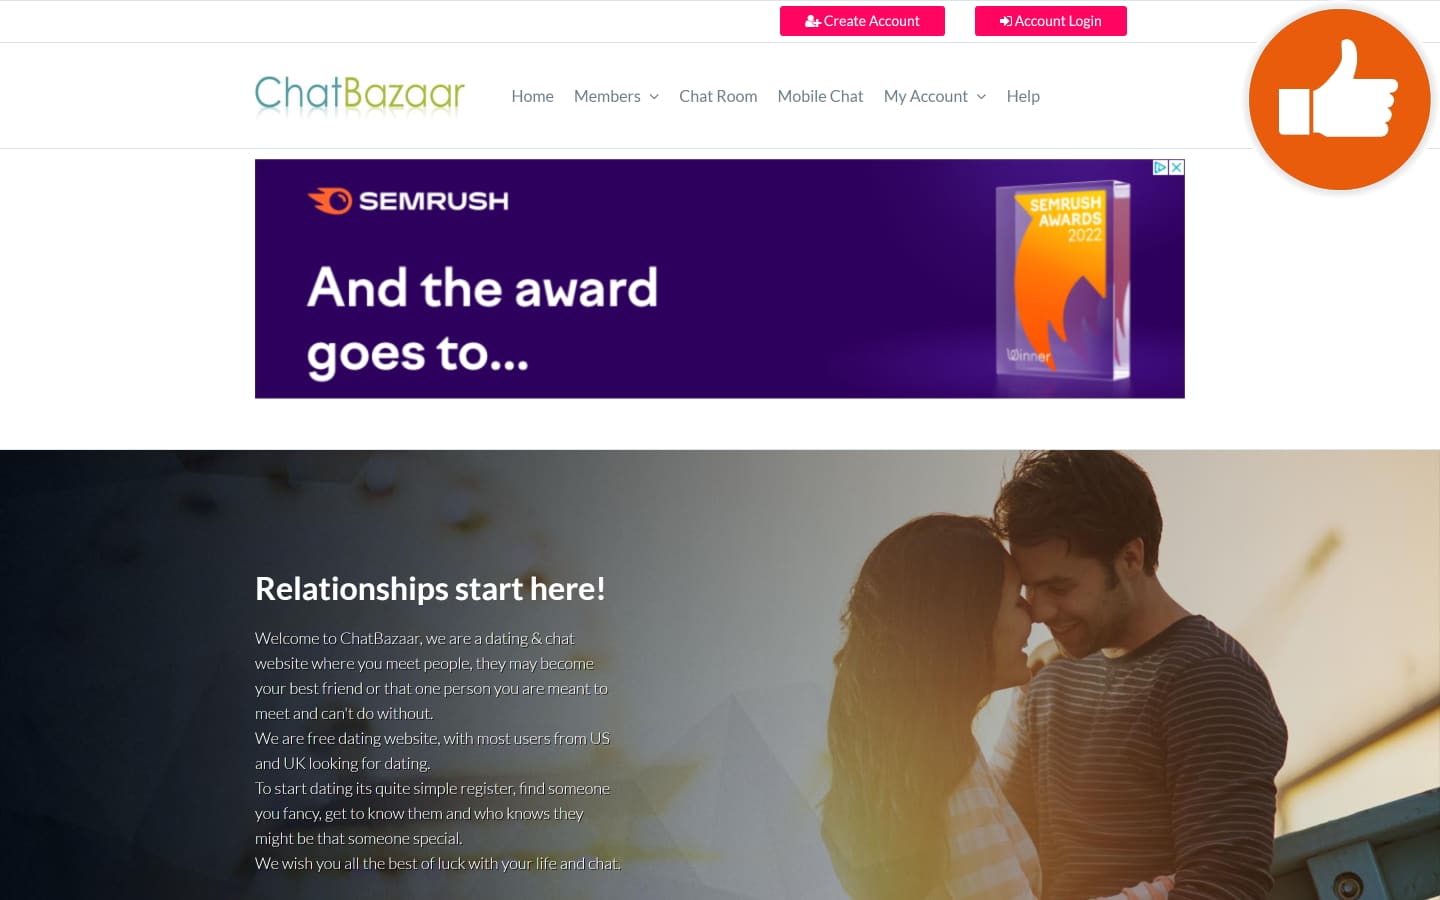 Review ChatBazaar.com scam experience